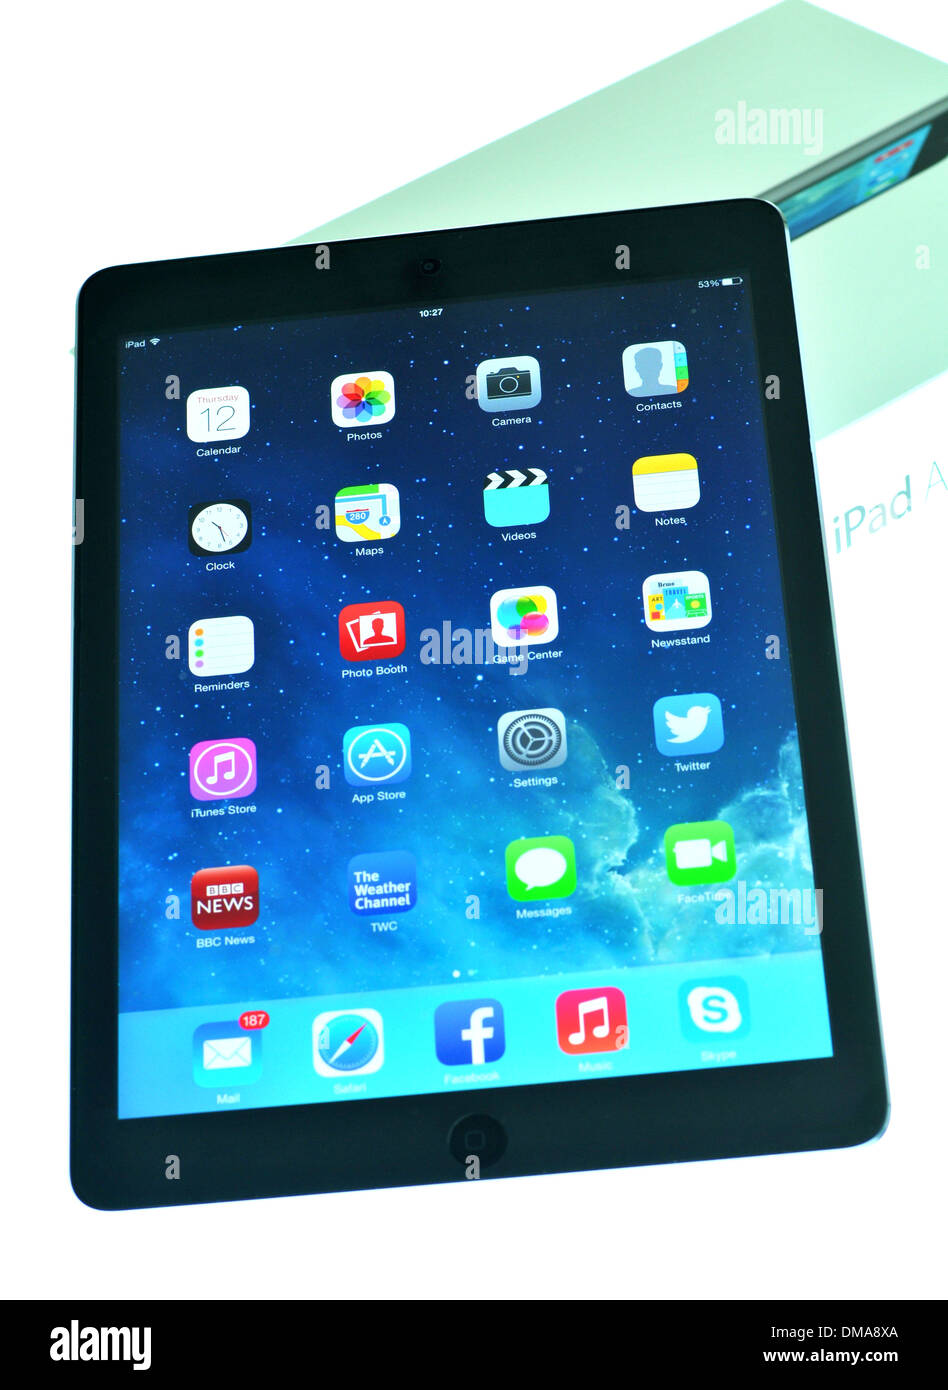 London, Regno Unito - 1 Novembre 2013: Apple Inc. rilascia il nuovo iPad aria, la quinta generazione di iPad computer tablet. Foto Stock